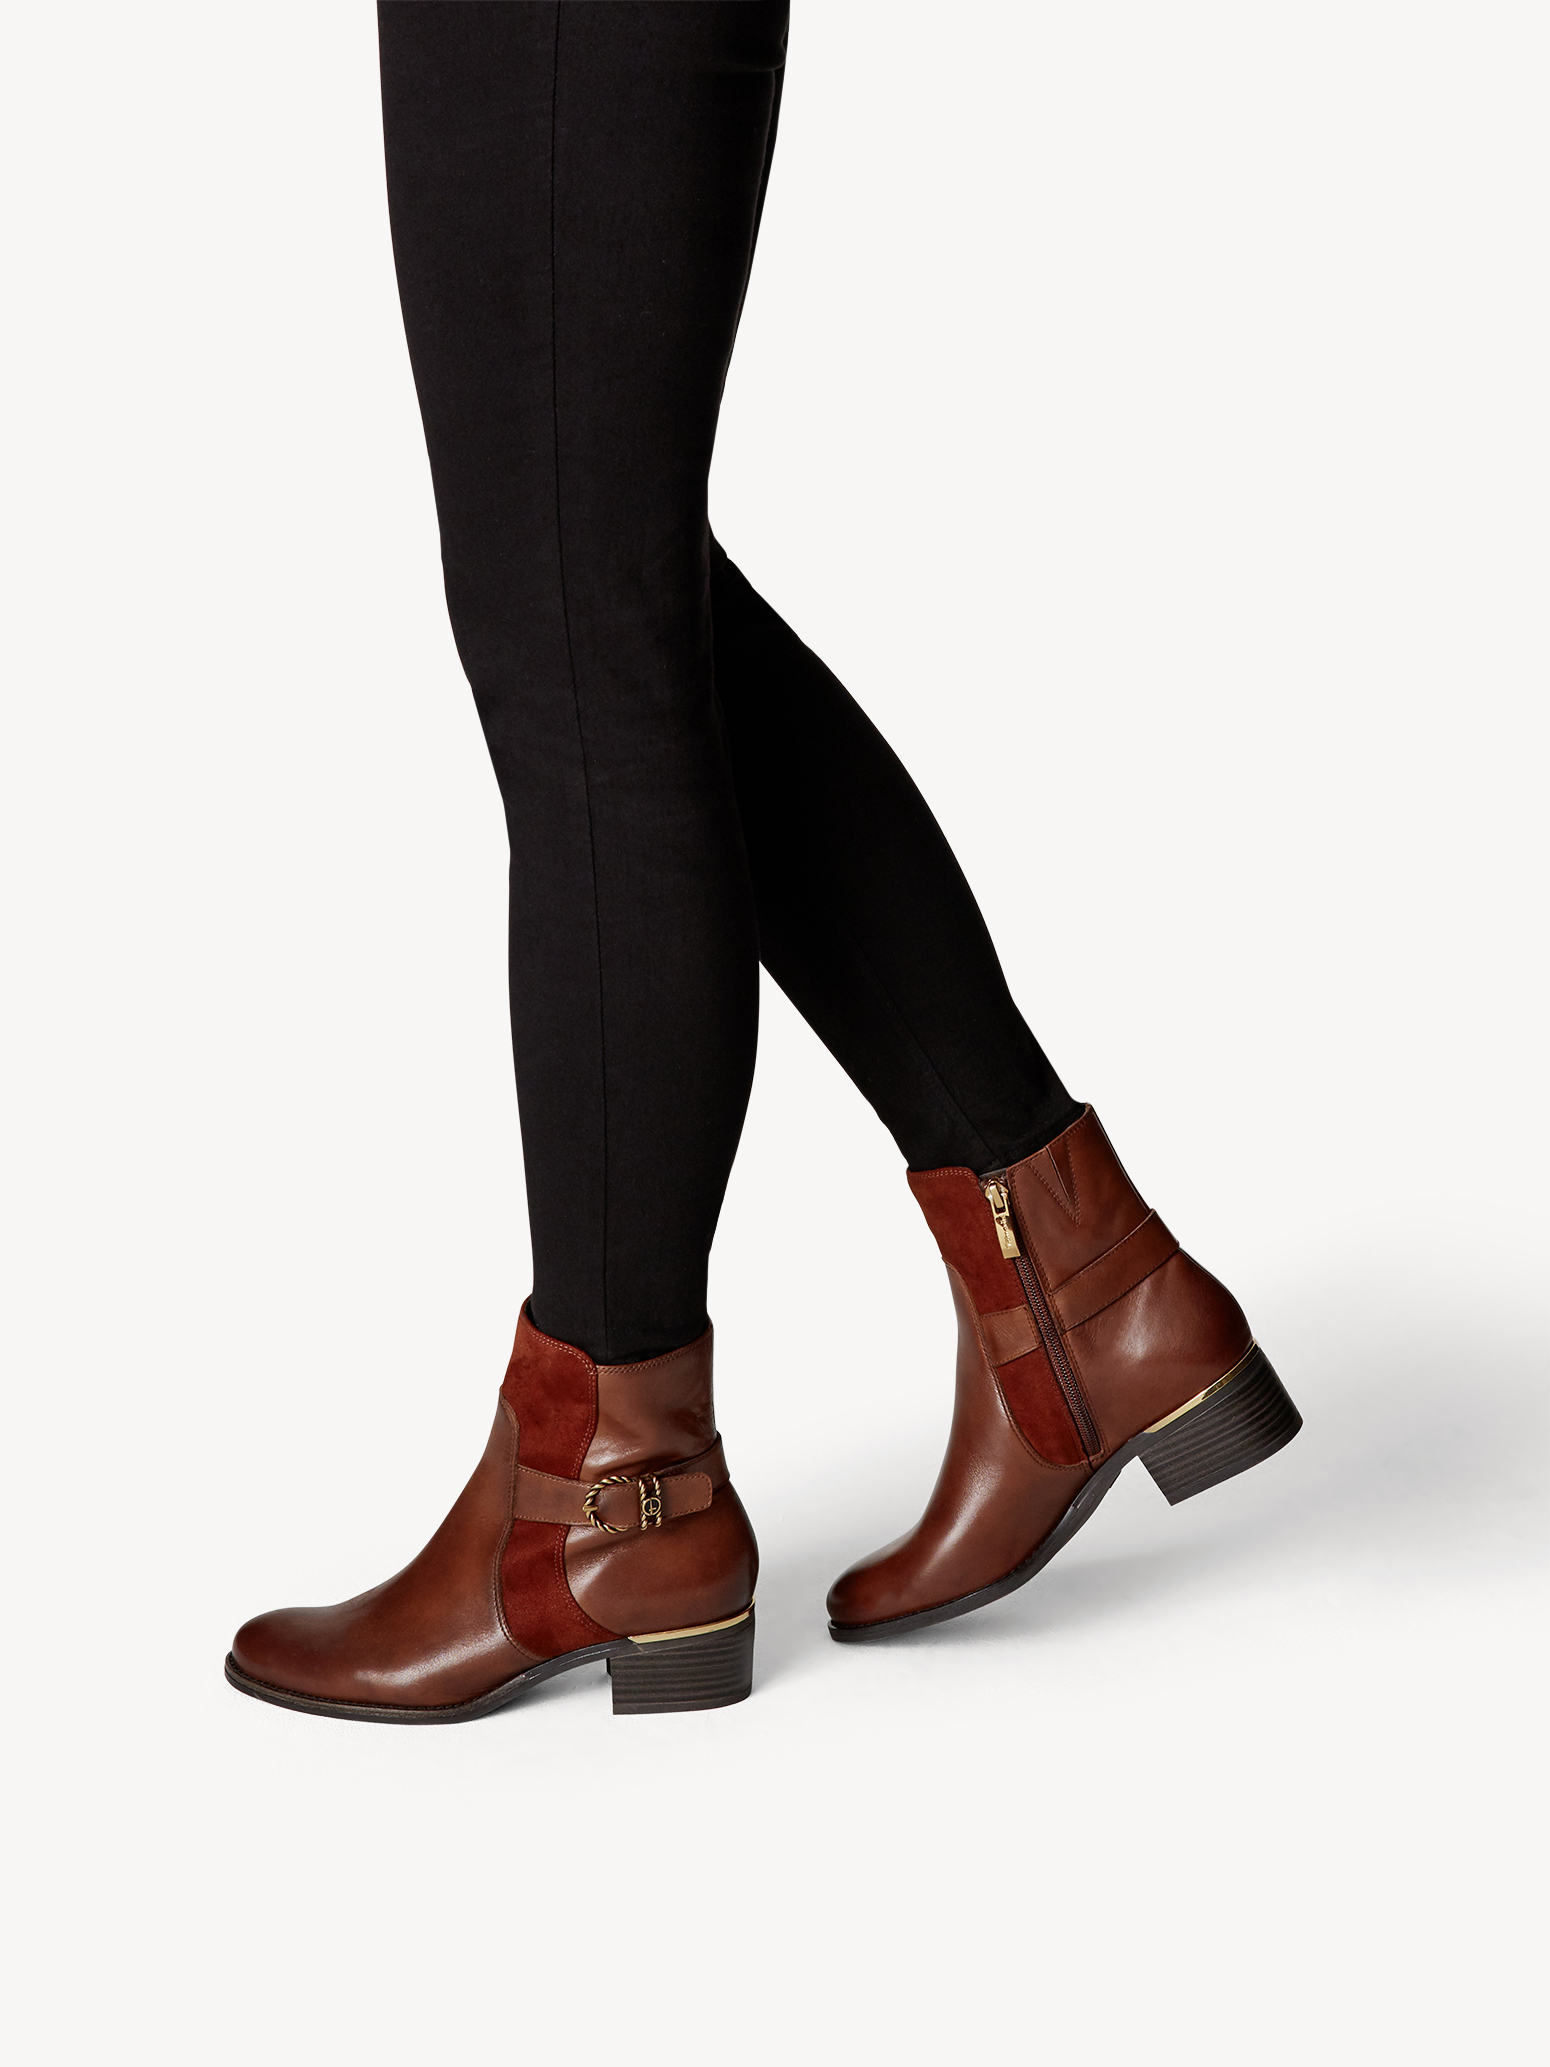 Ботинки женские (коричневый) - изображение №1